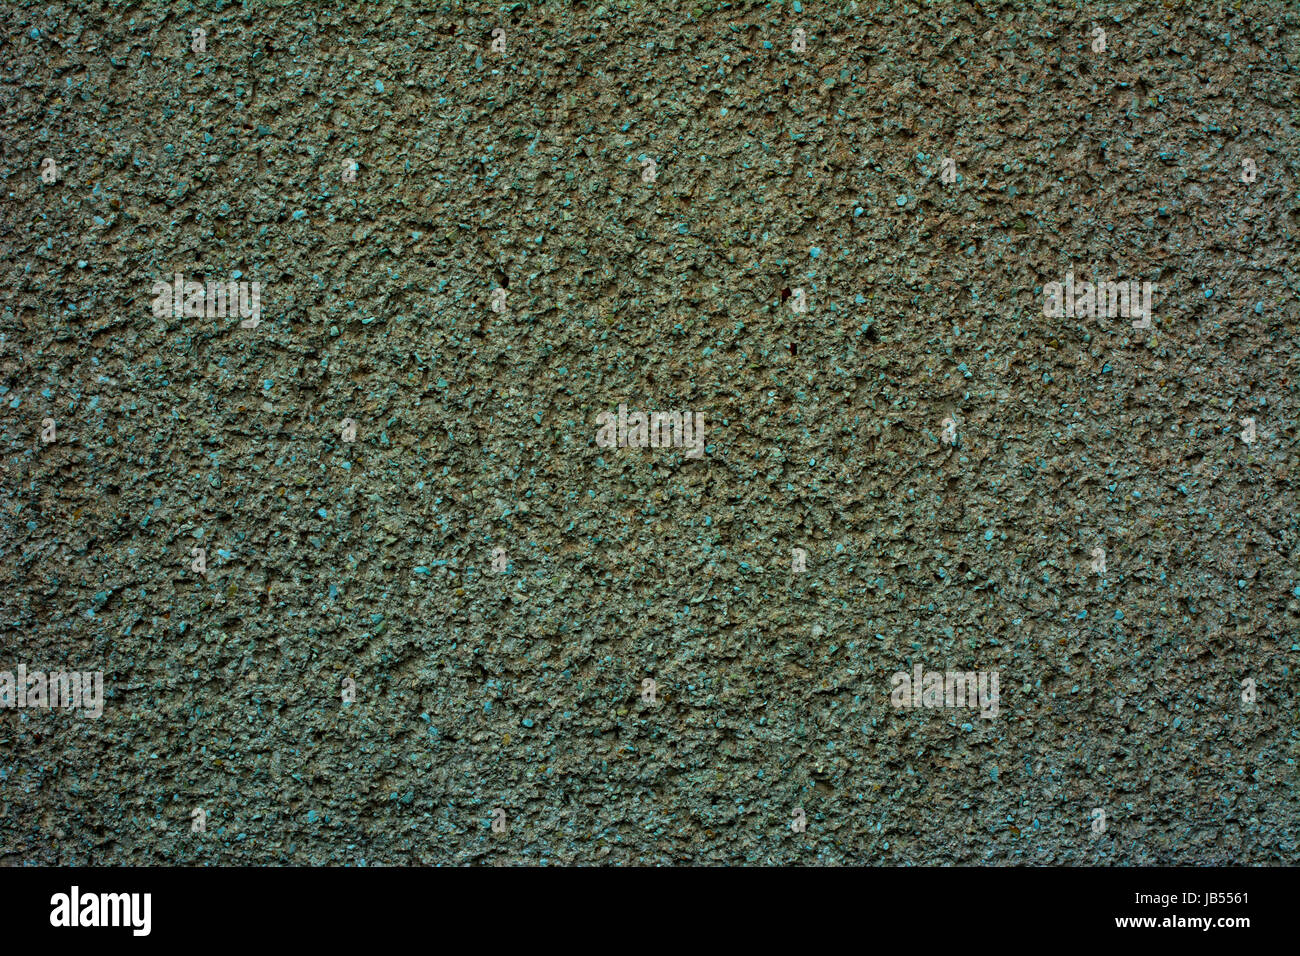 Plâtre de gypse vert, mur de béton, texture huilée de manière chaotique. Fonds d'écran. Banque D'Images